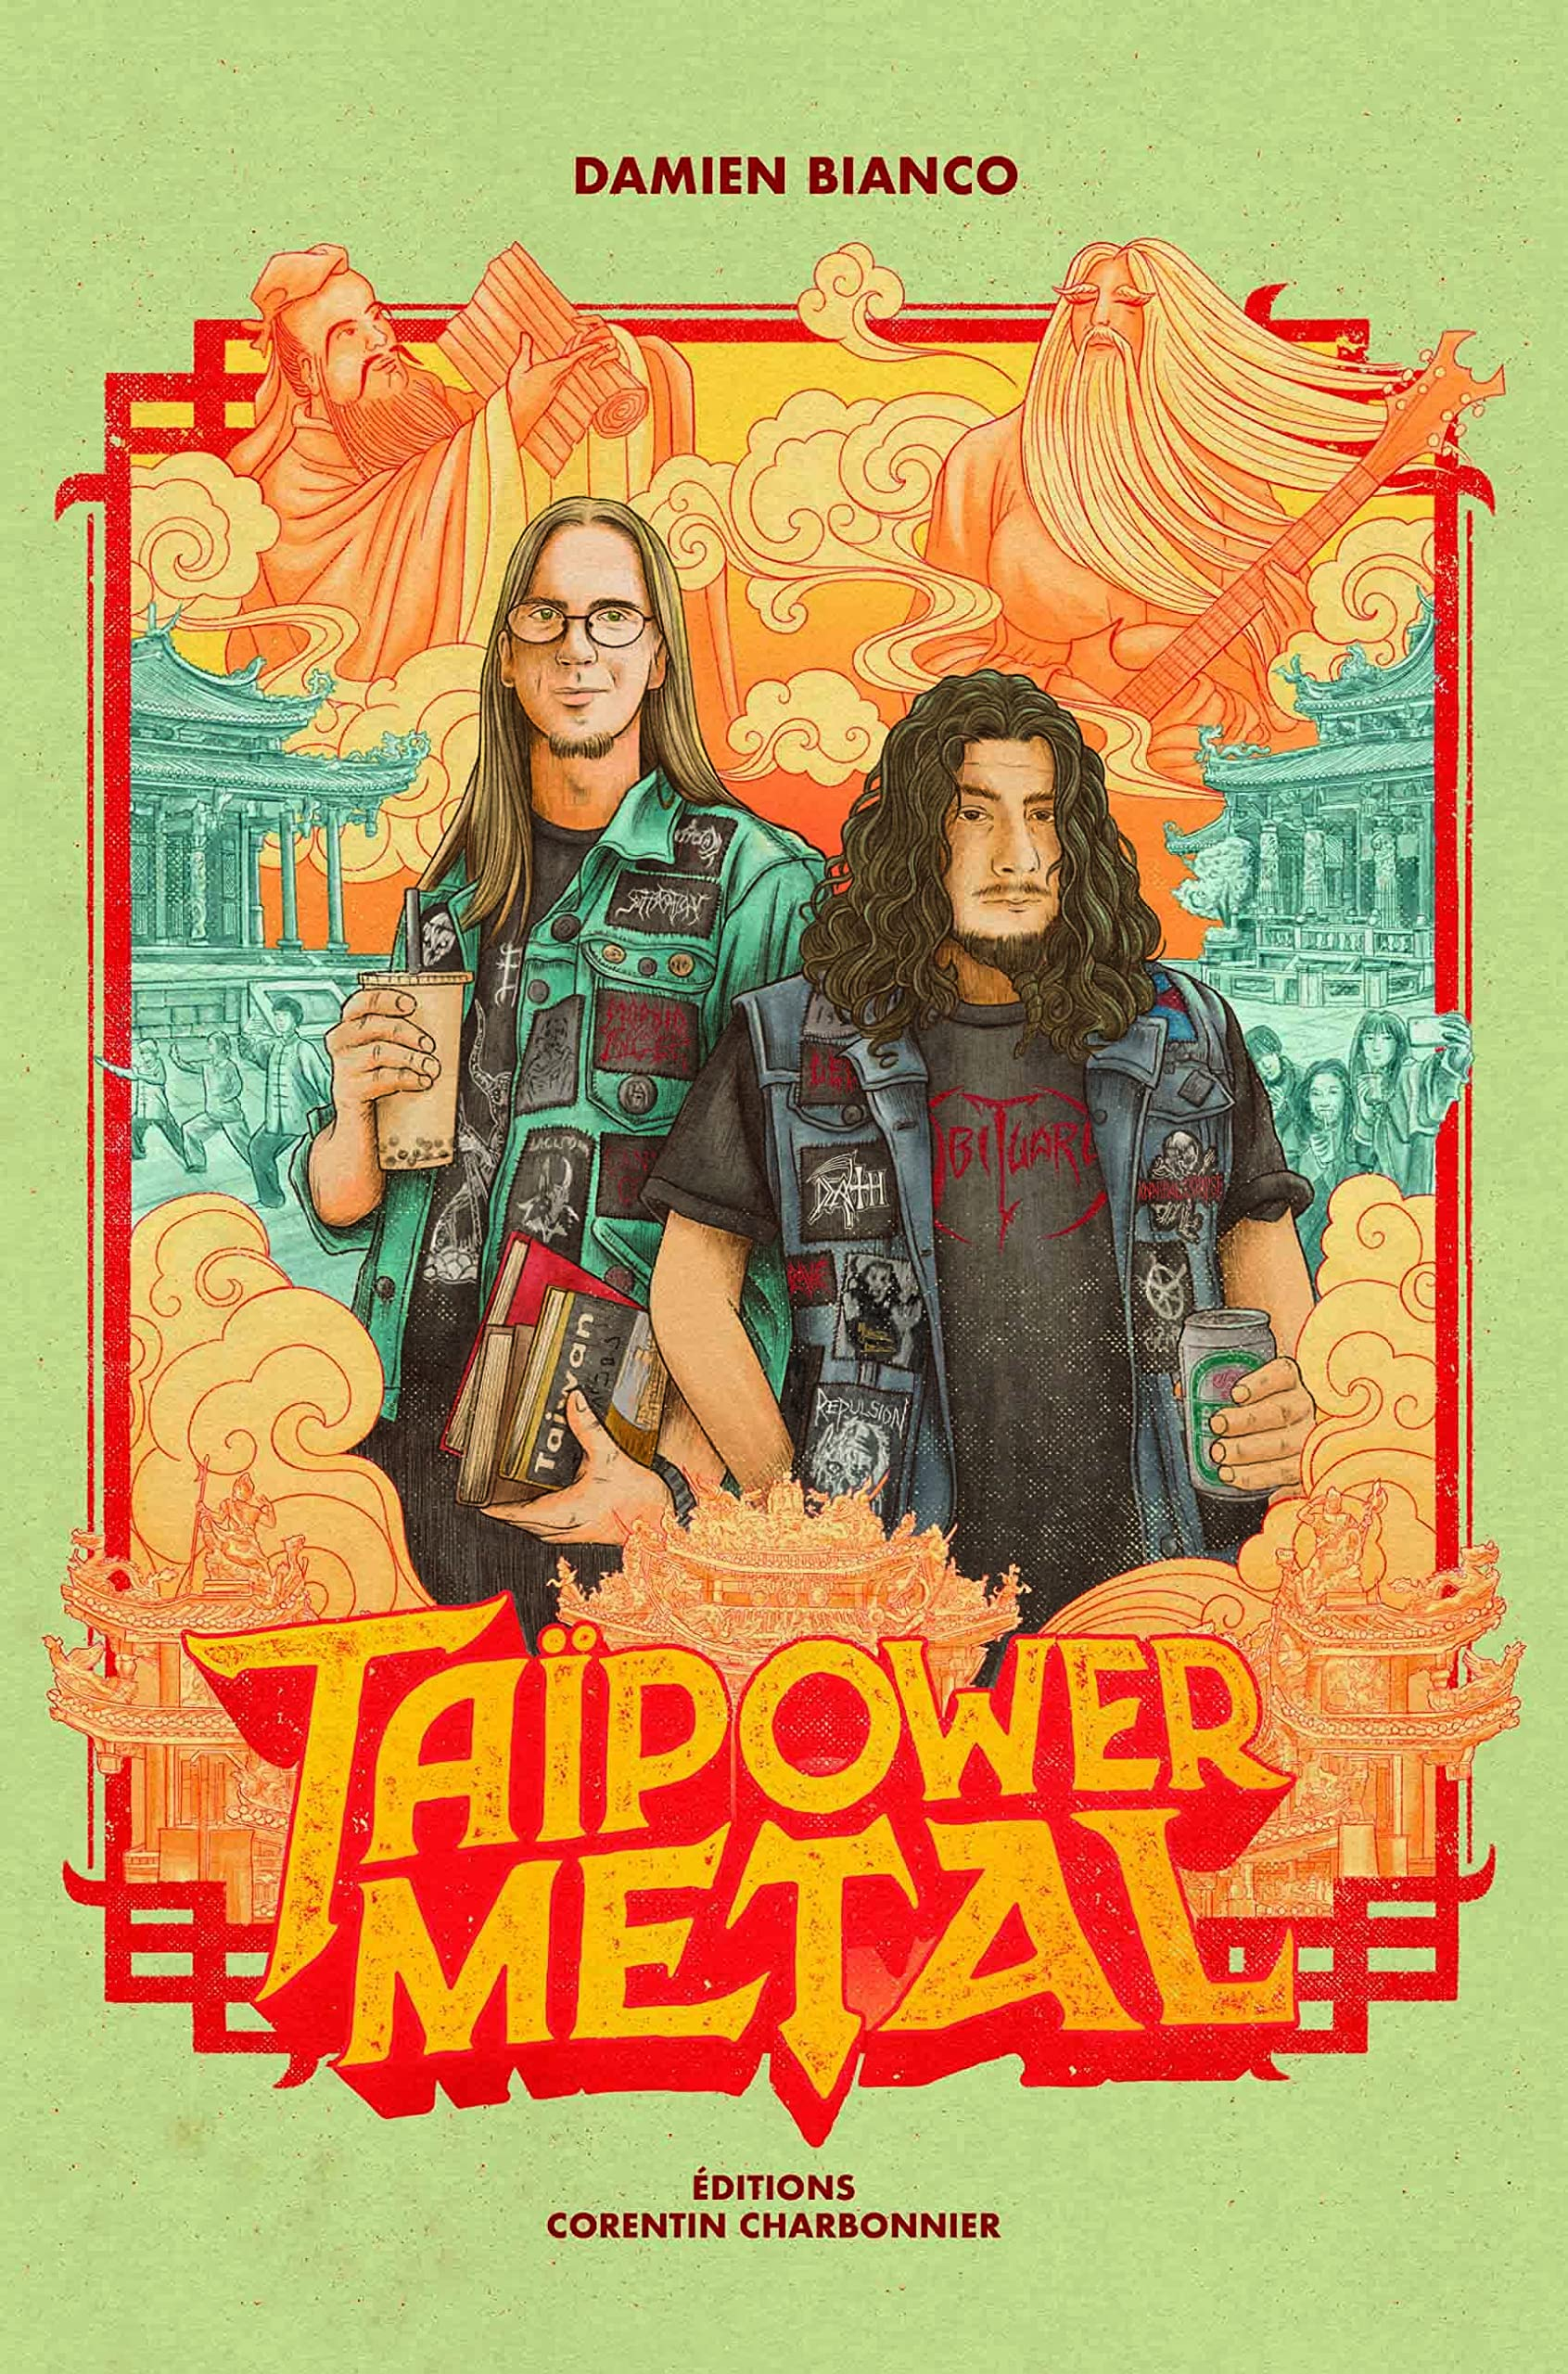 Taipower metal